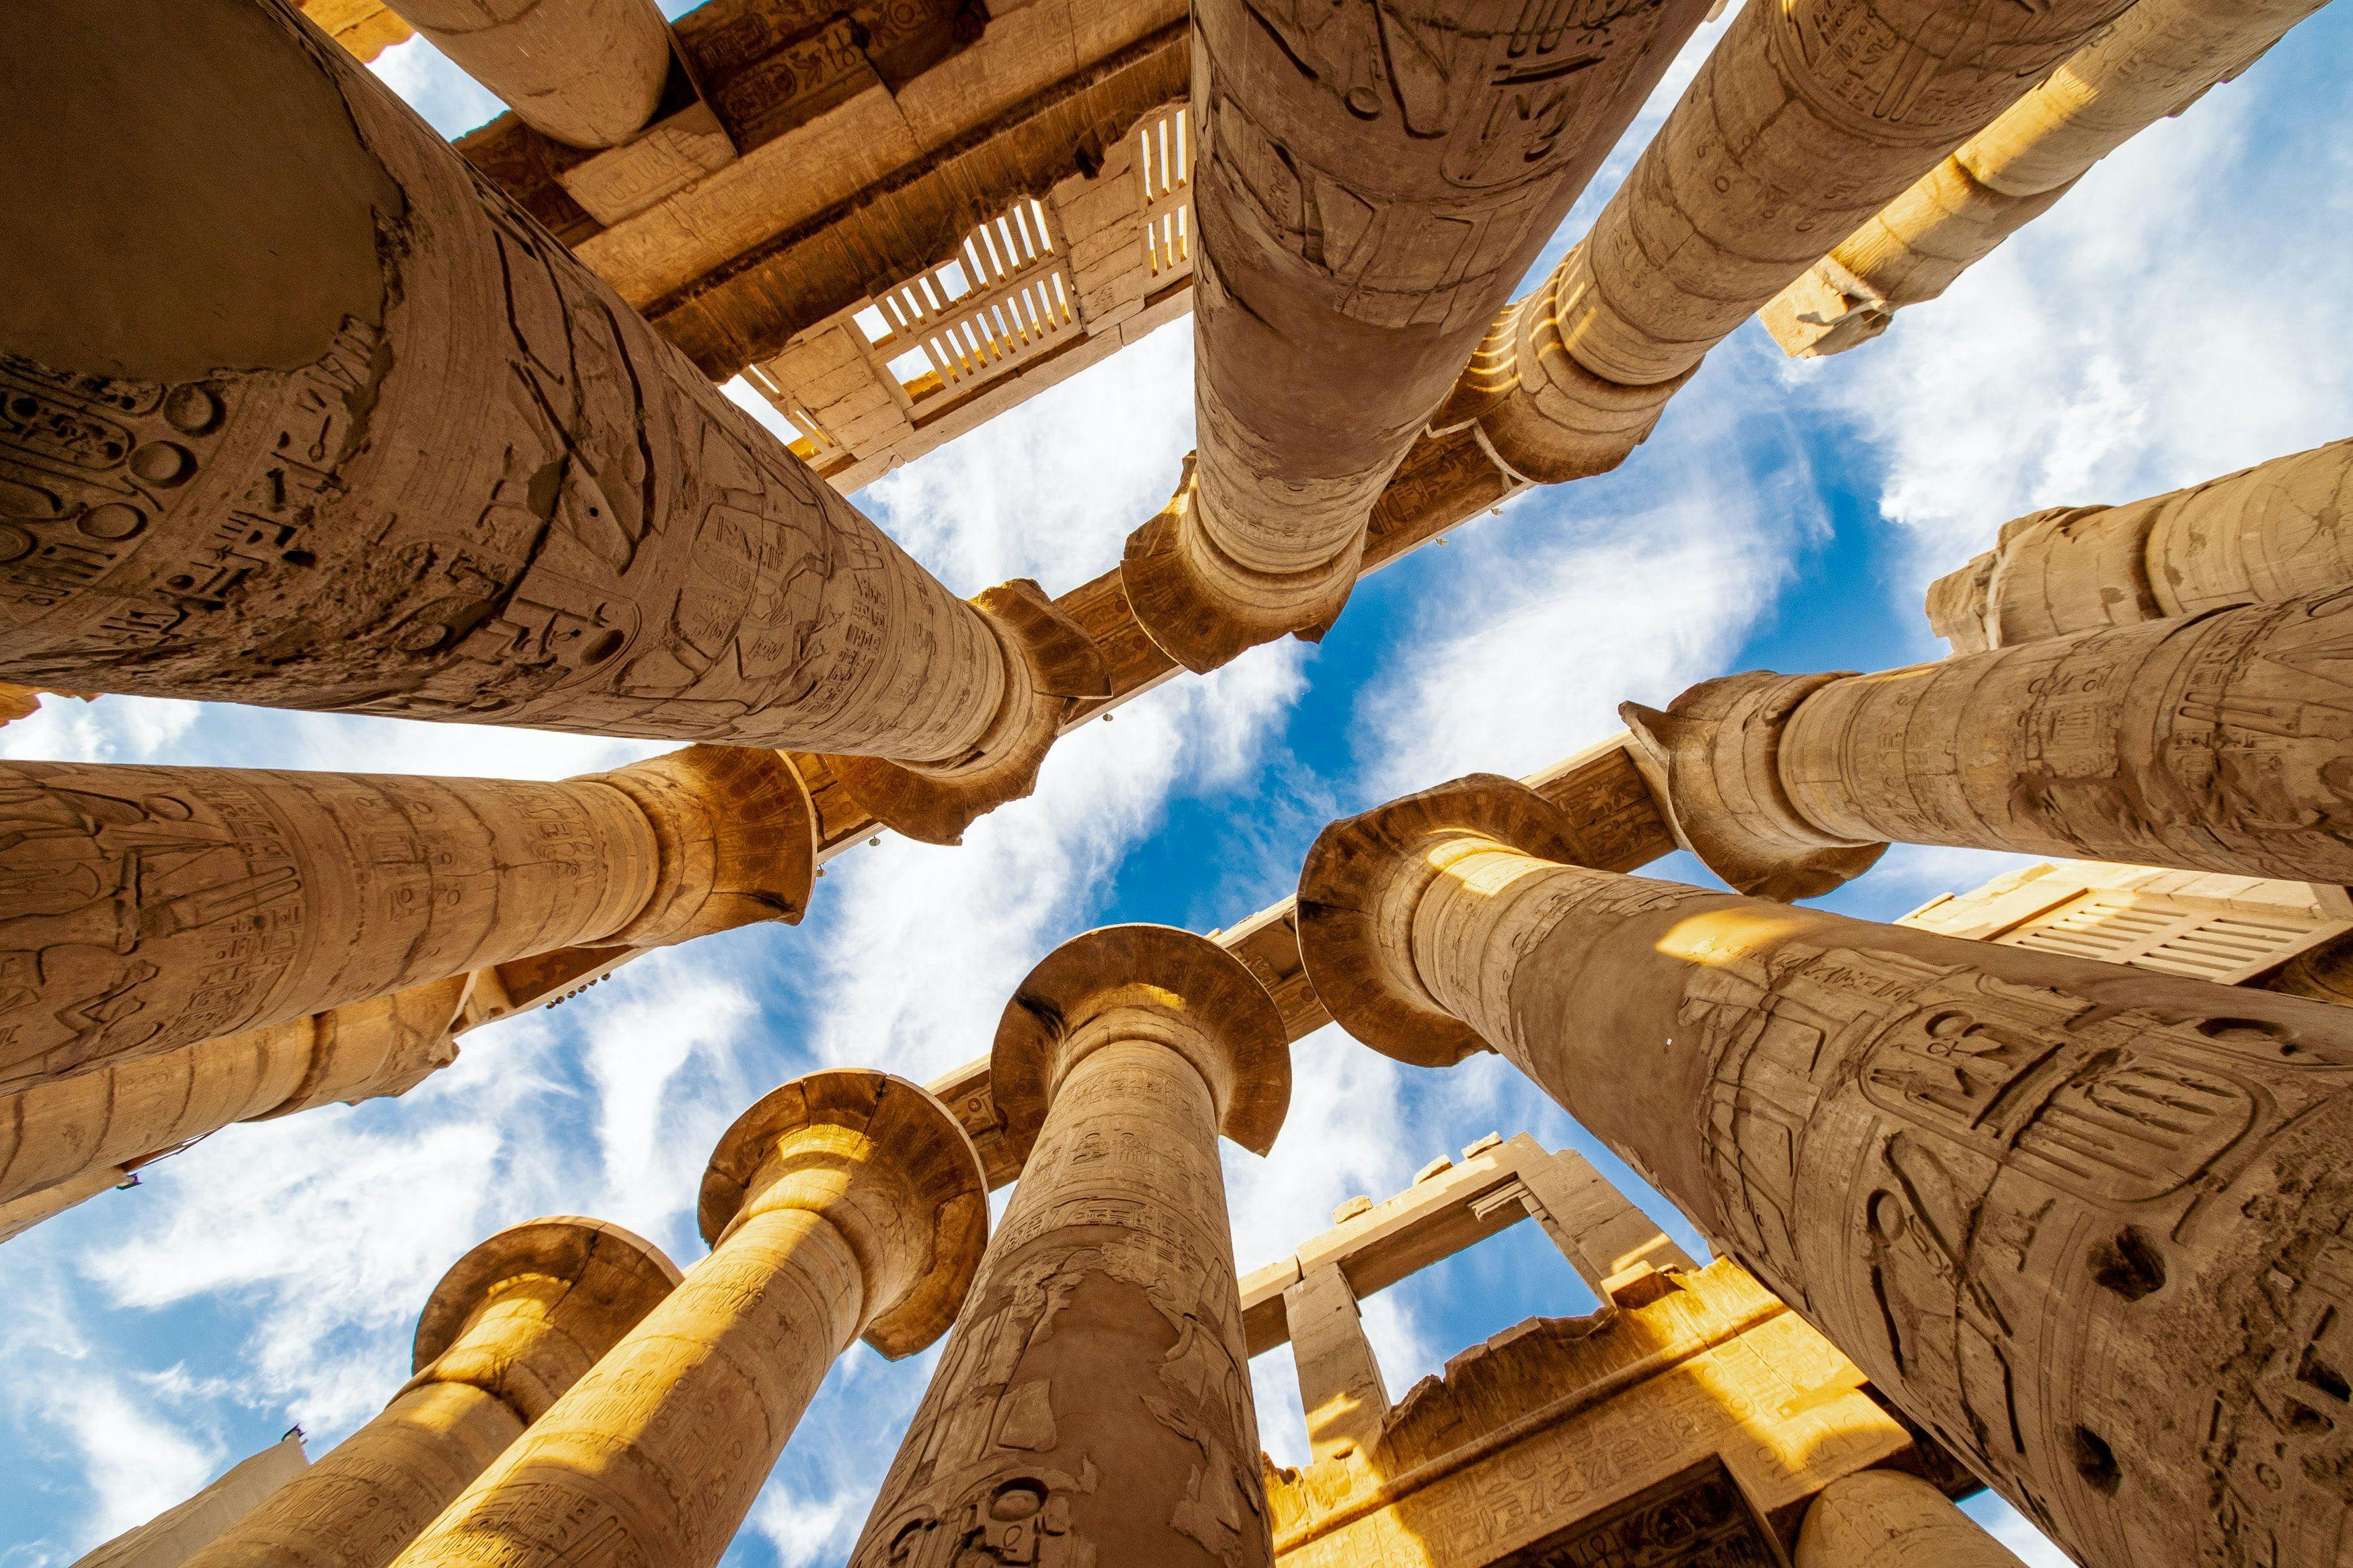 Beautiful upwards angle of beautifully preserved Egyptian ruins